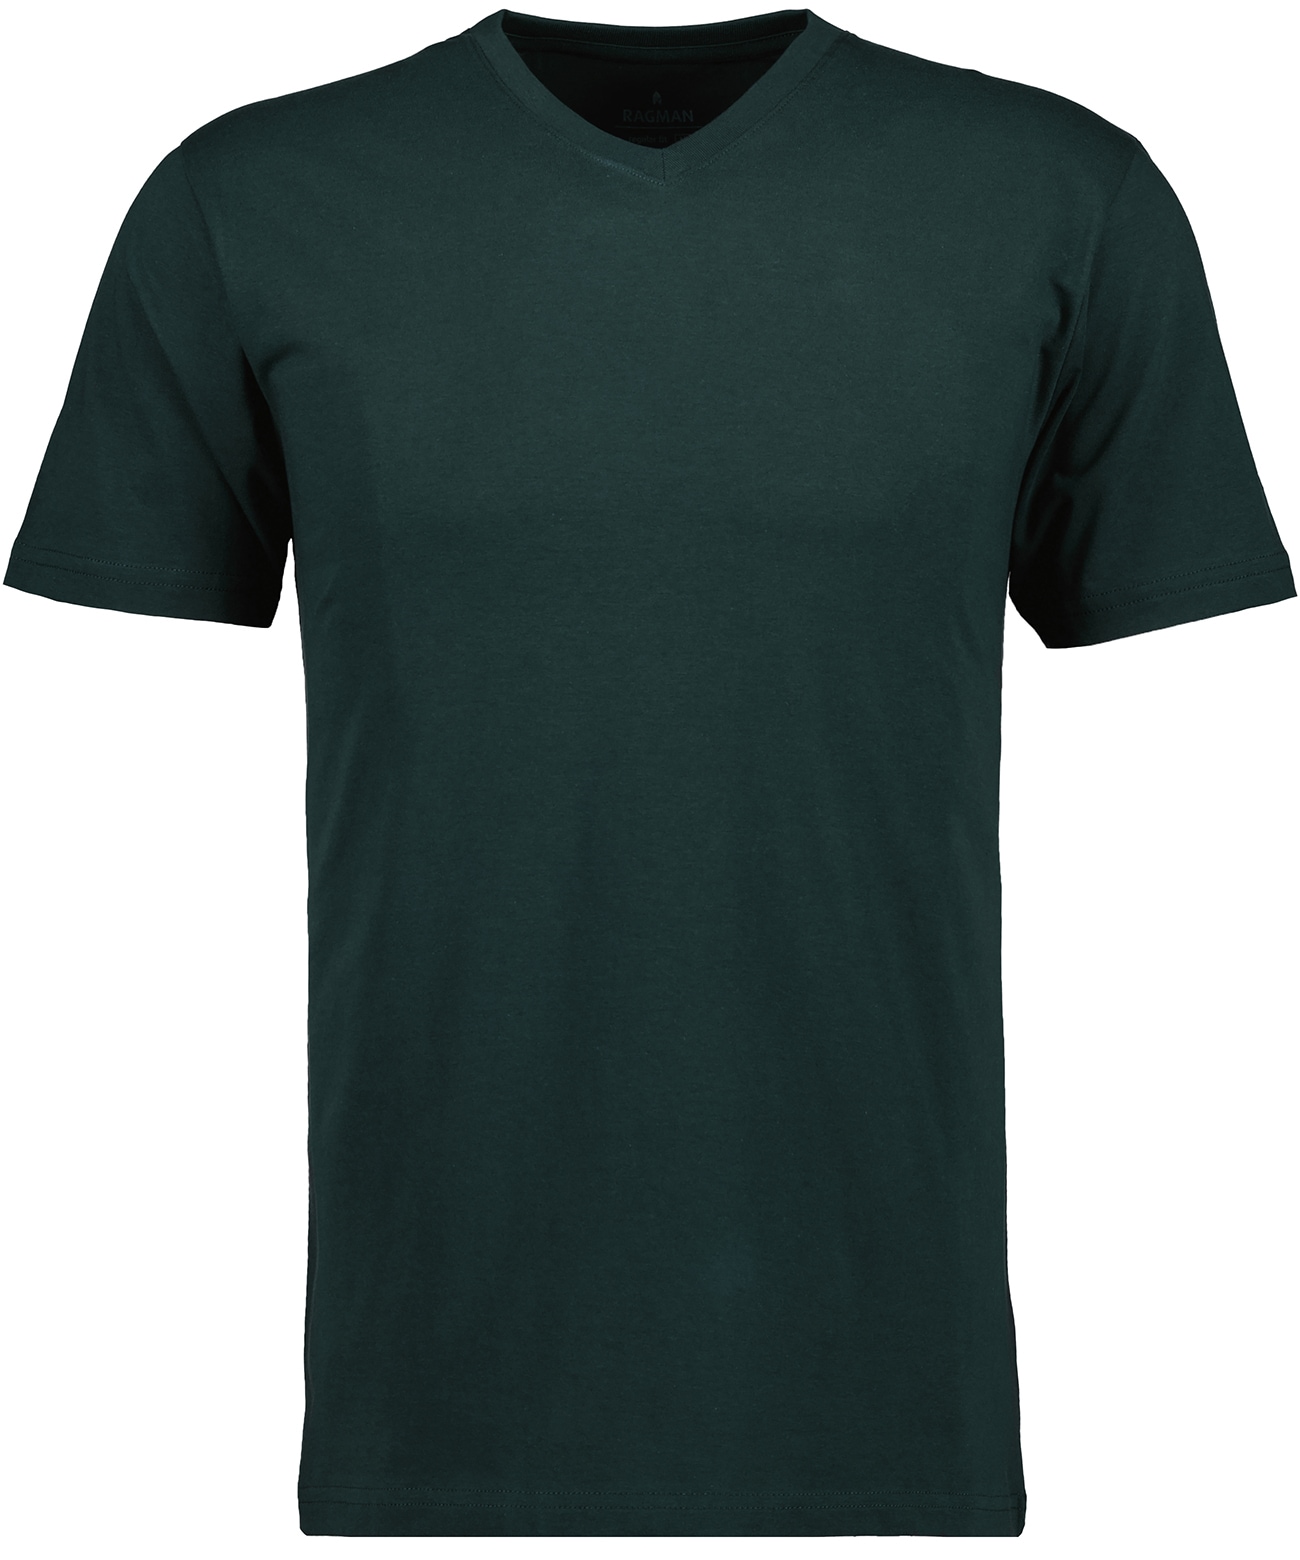 RAGMAN T-Shirt online kaufen bei OTTO